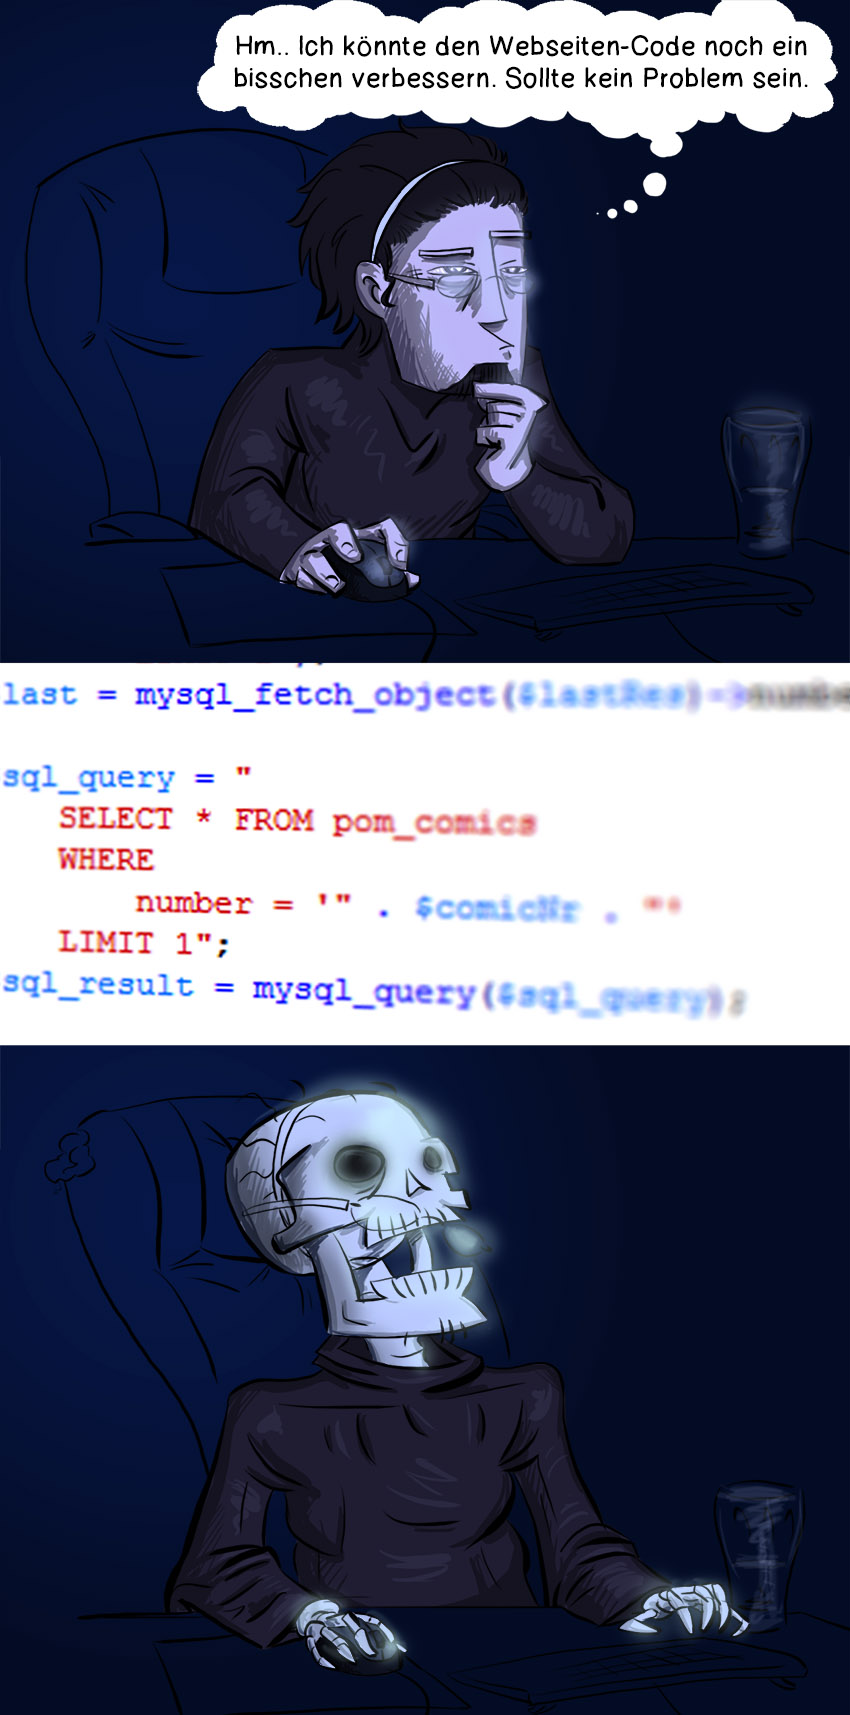 Piece of Me - Ein Webcomic über die Gefahren des Programmierens.